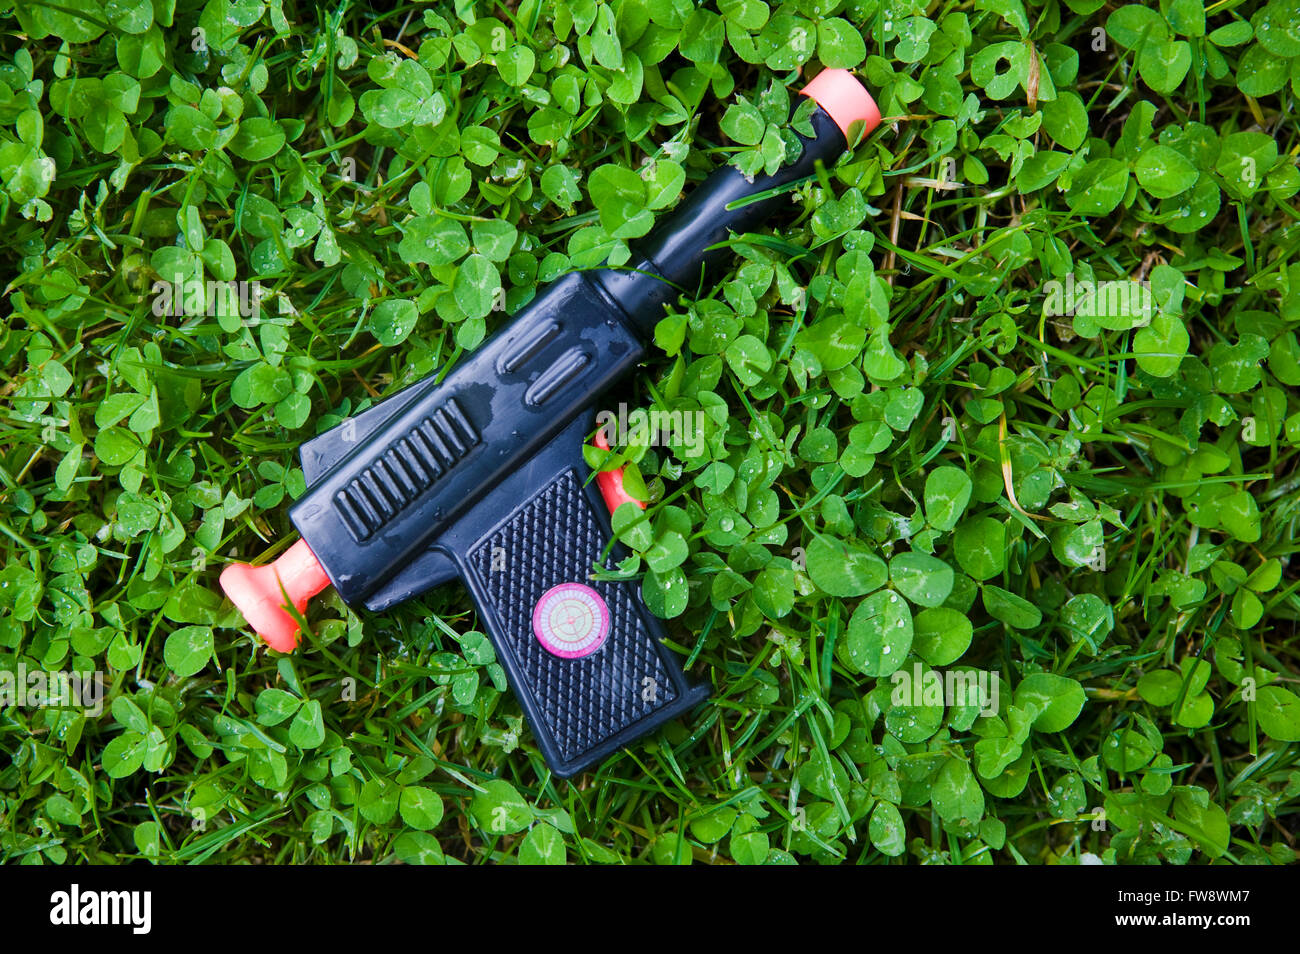 Un pistolet d'enfant ou en plastique pistolet jouet laissé allongé dans  l'herbe d'un jardin, perdu dans le trèfle l'arme représente un jouet à  l'enfant même si certains peuvent croire que l'utilisation de